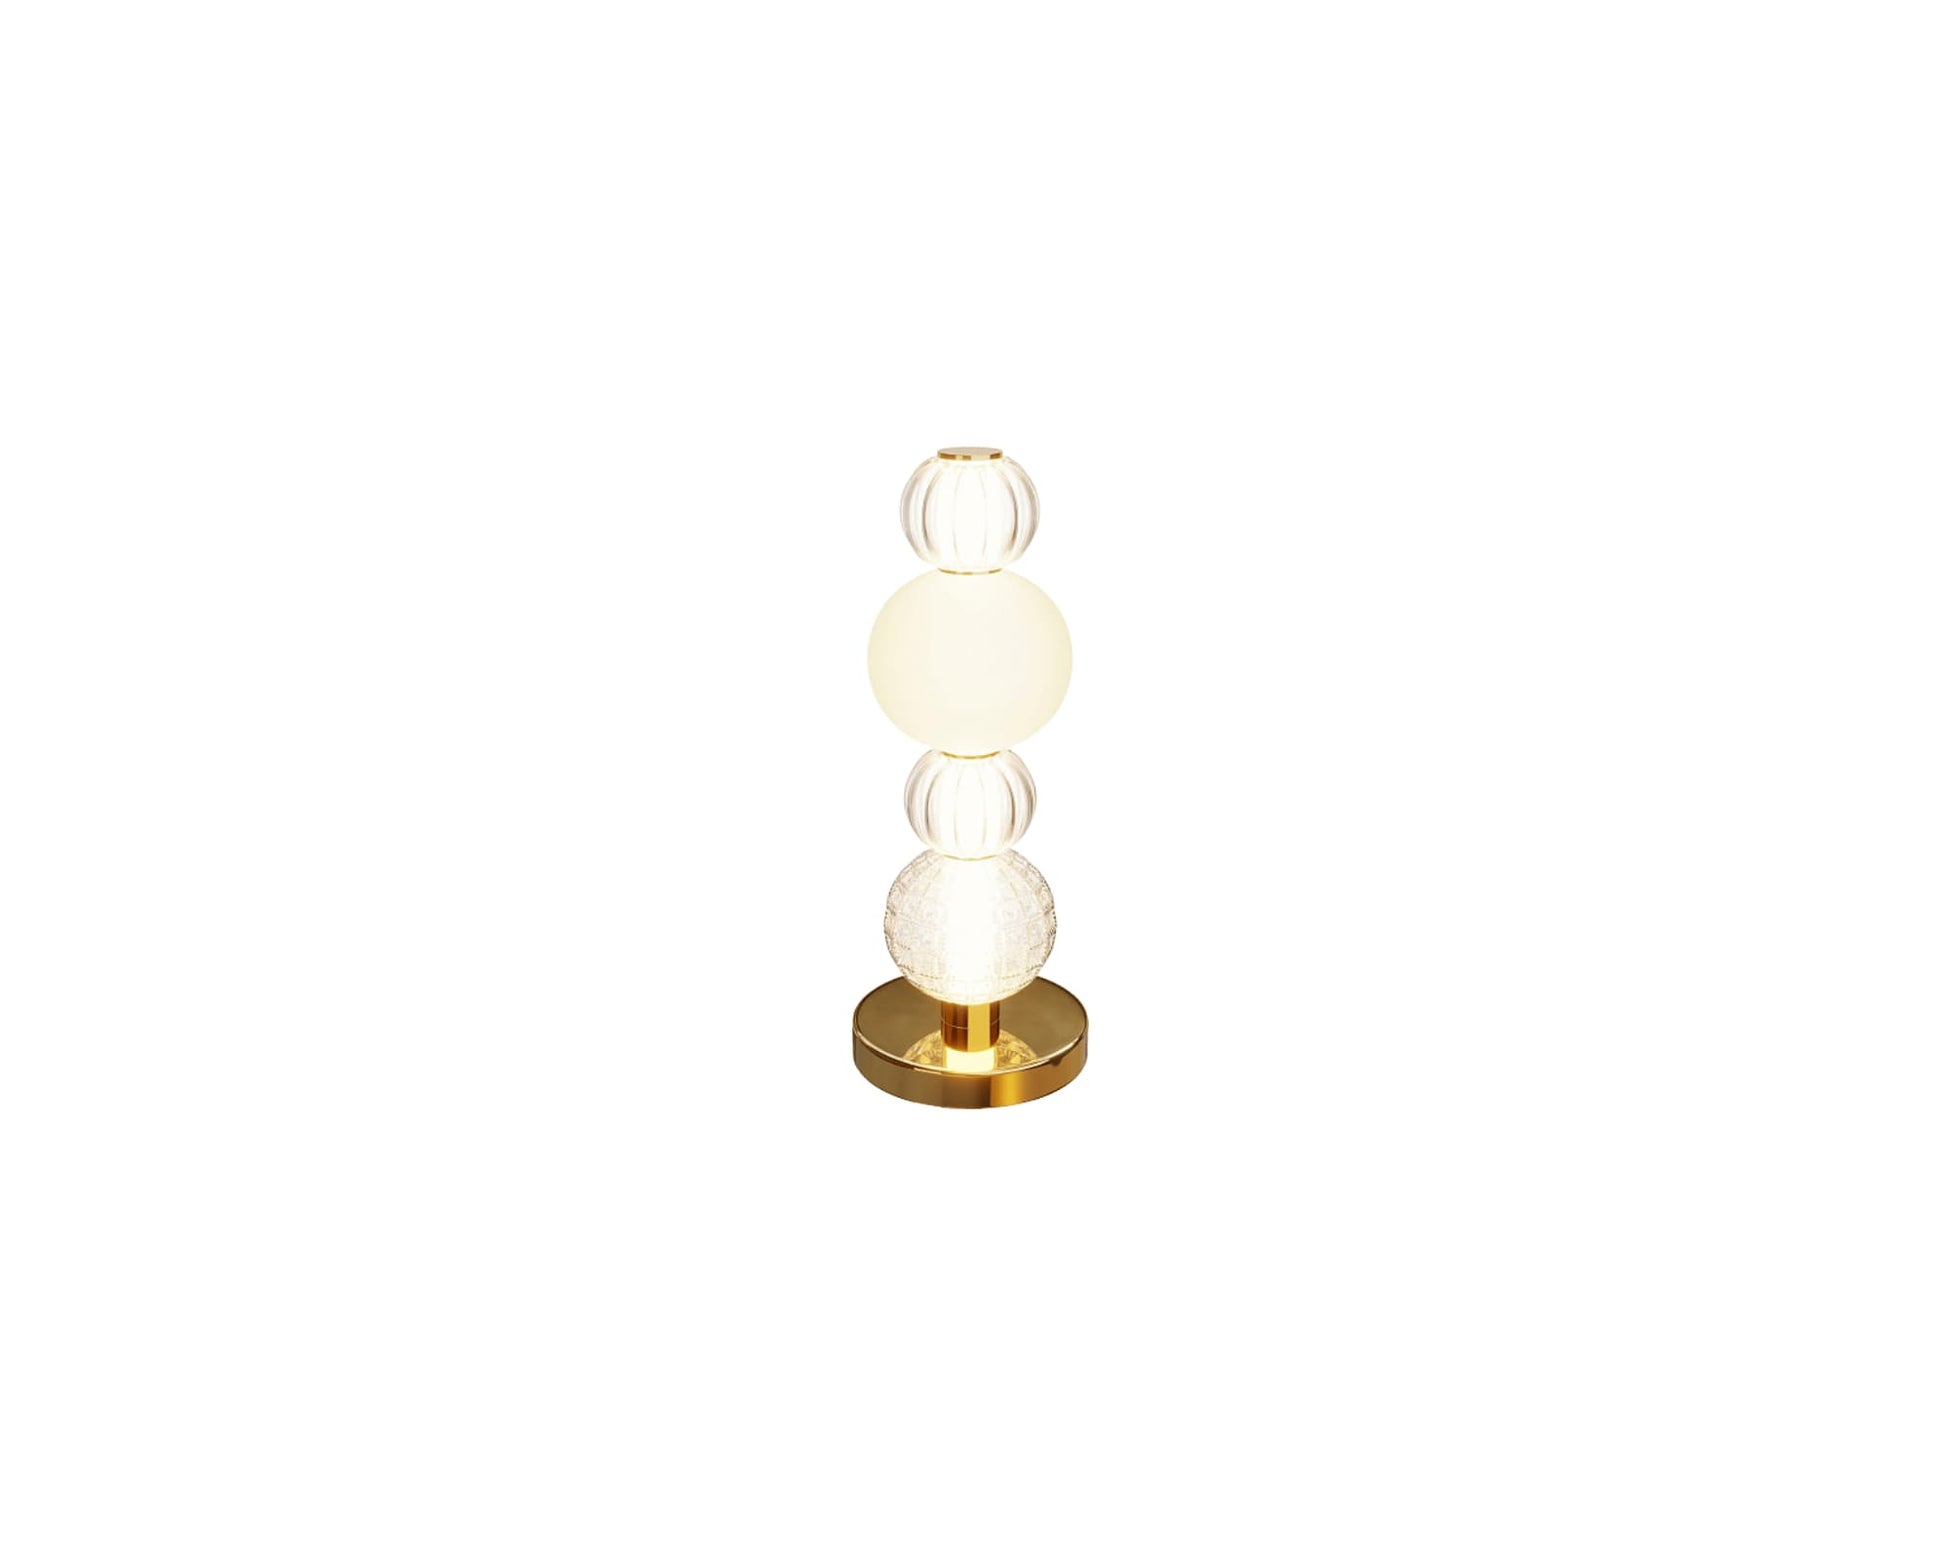 Une Lampe de Chevet Doré, luxueuse et très design.